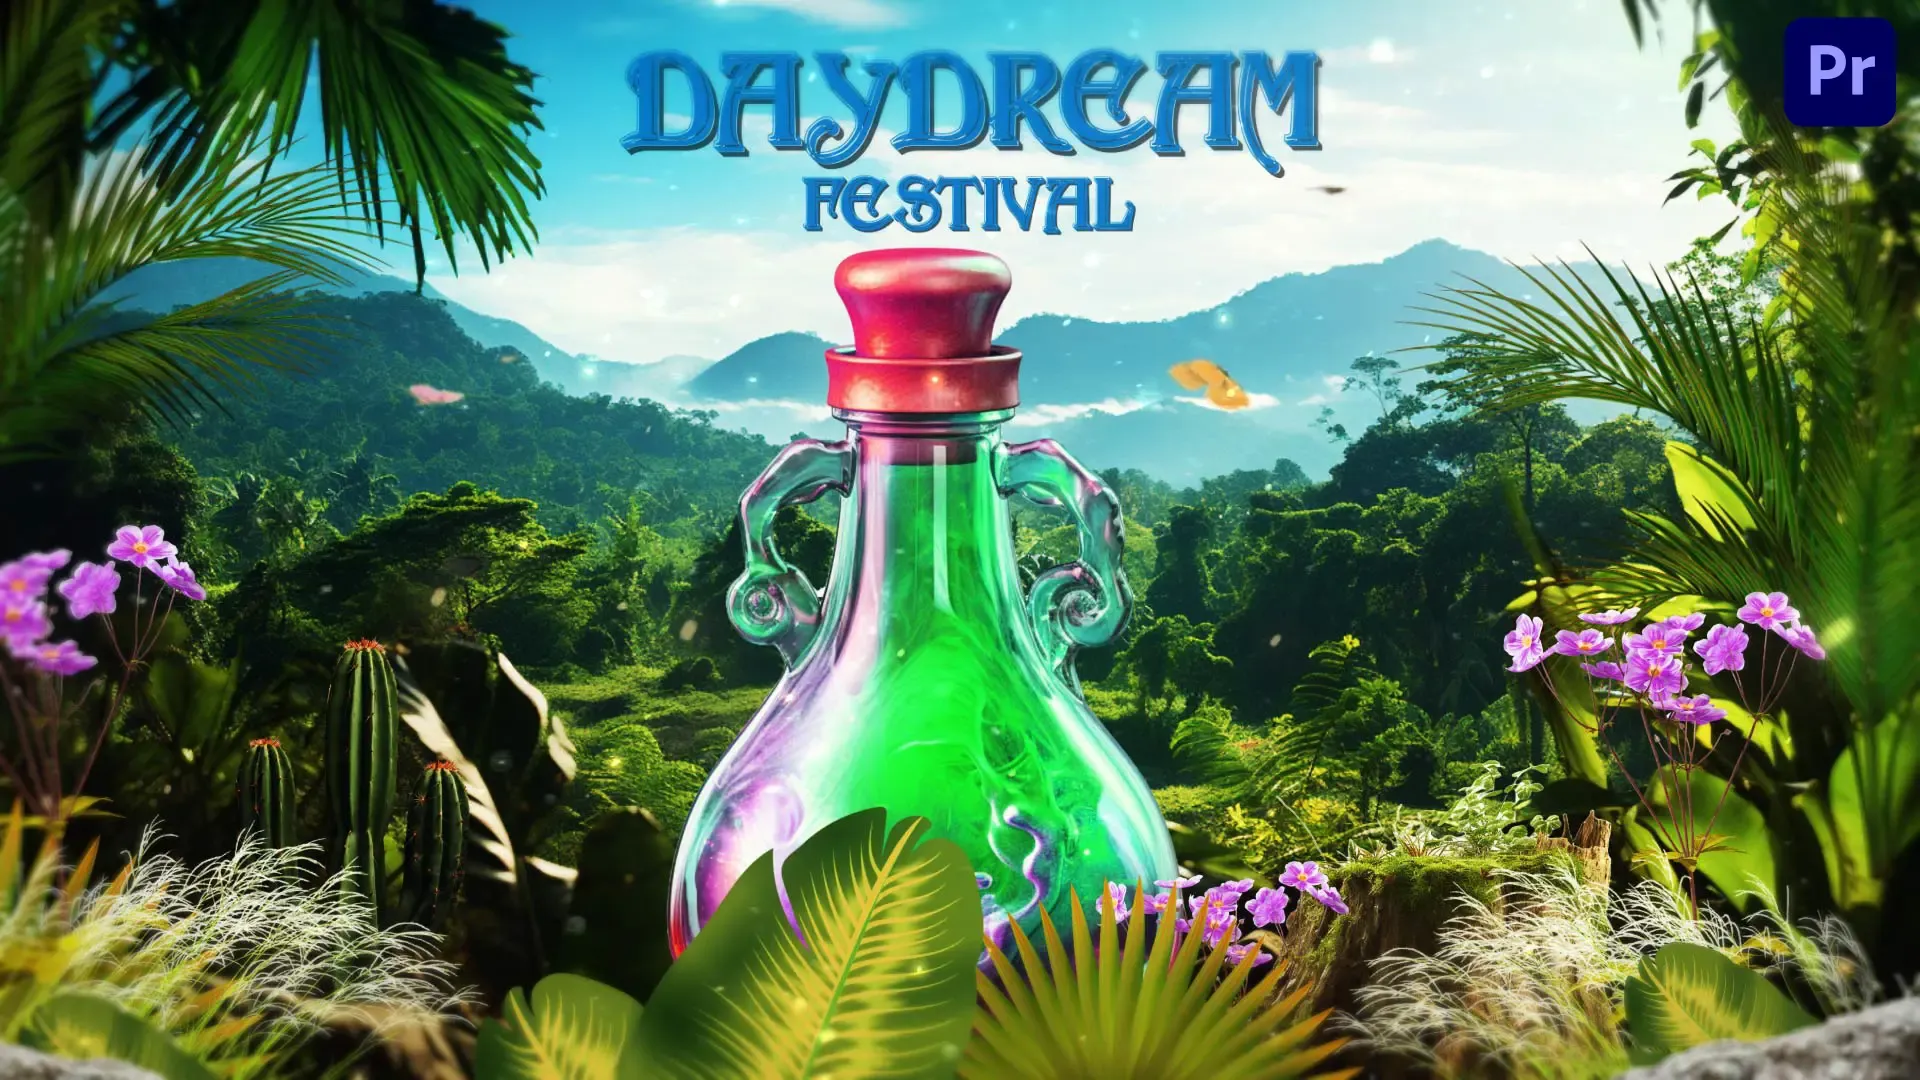 Glamorous Daydream Festival Opener